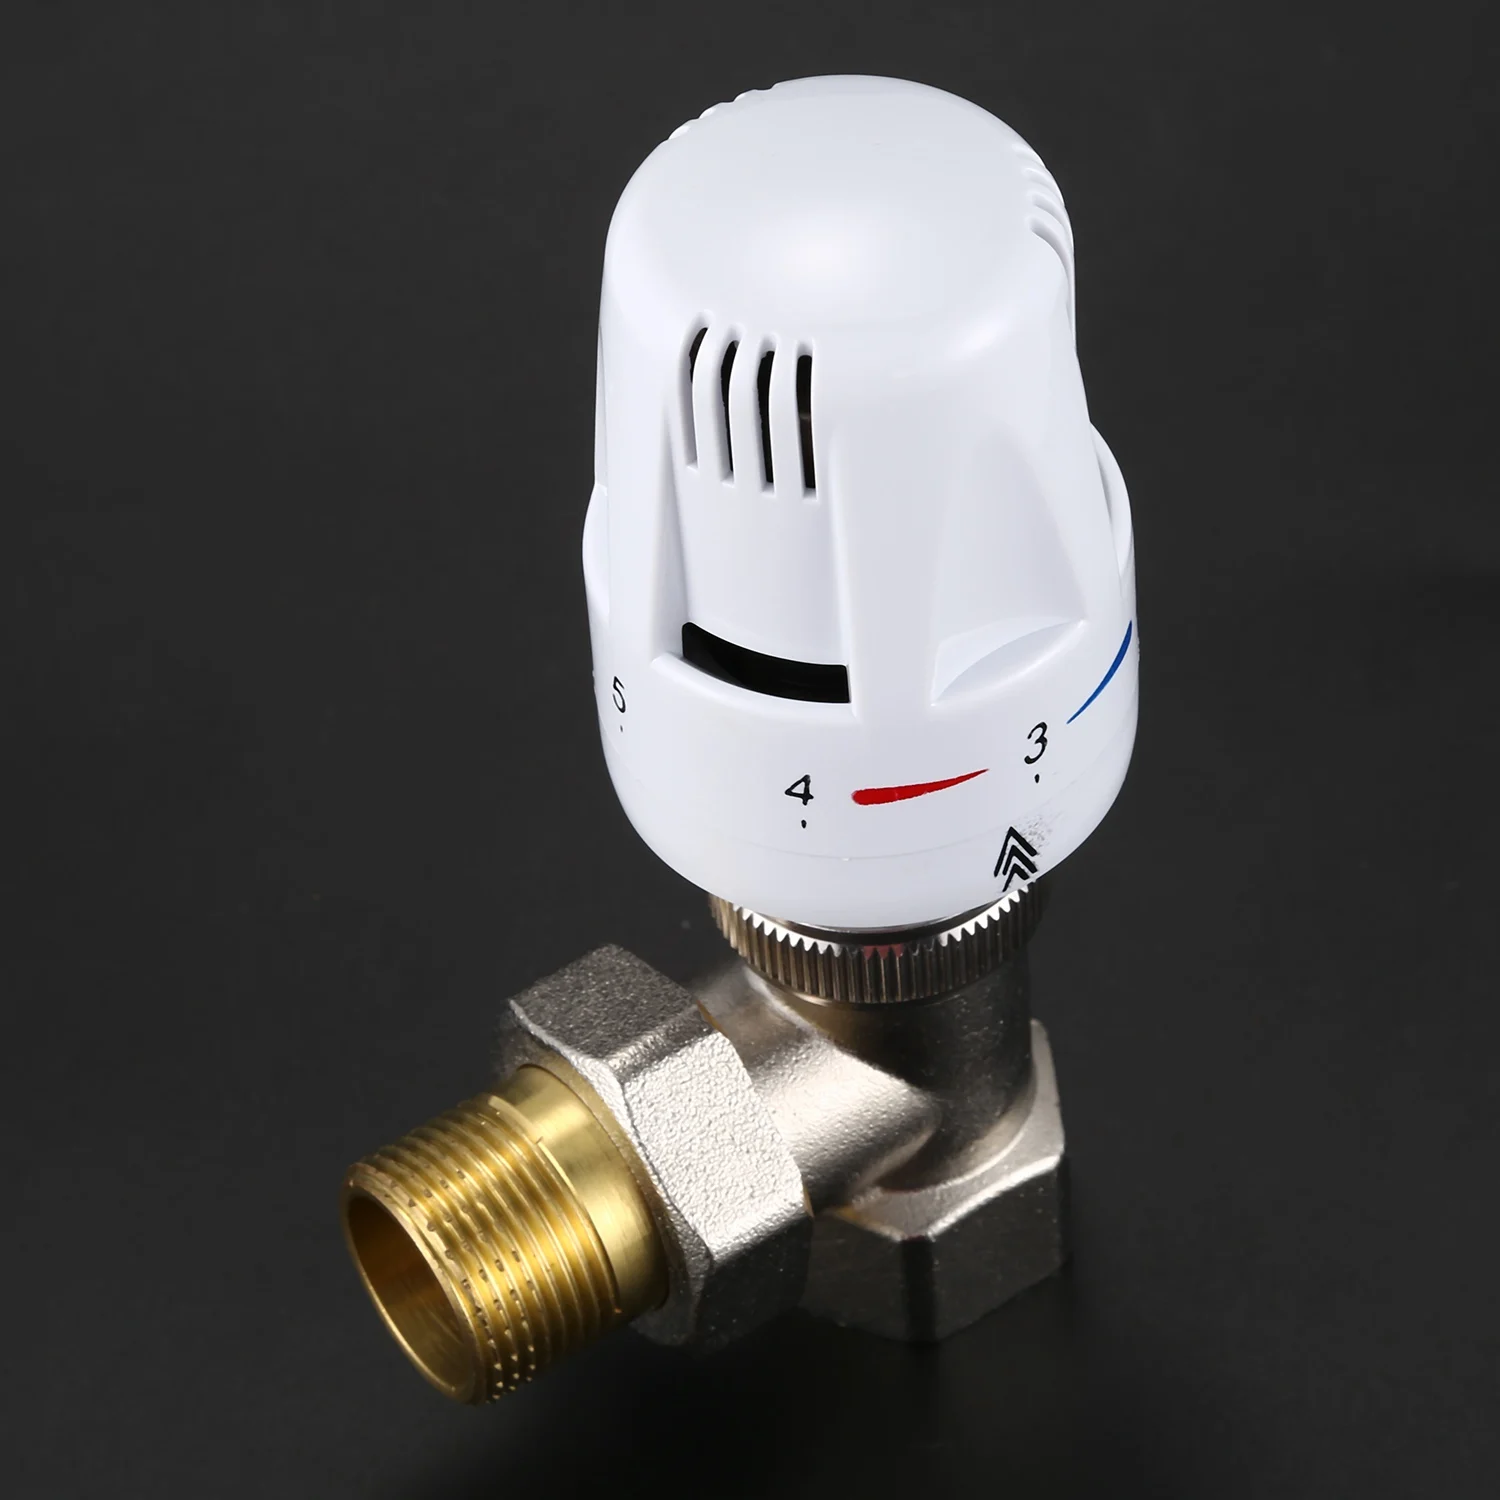 CNIM Горячая DN20 Медь Автоматический контроль температуры клапан угол пол Отопление и отопление специальный клапан